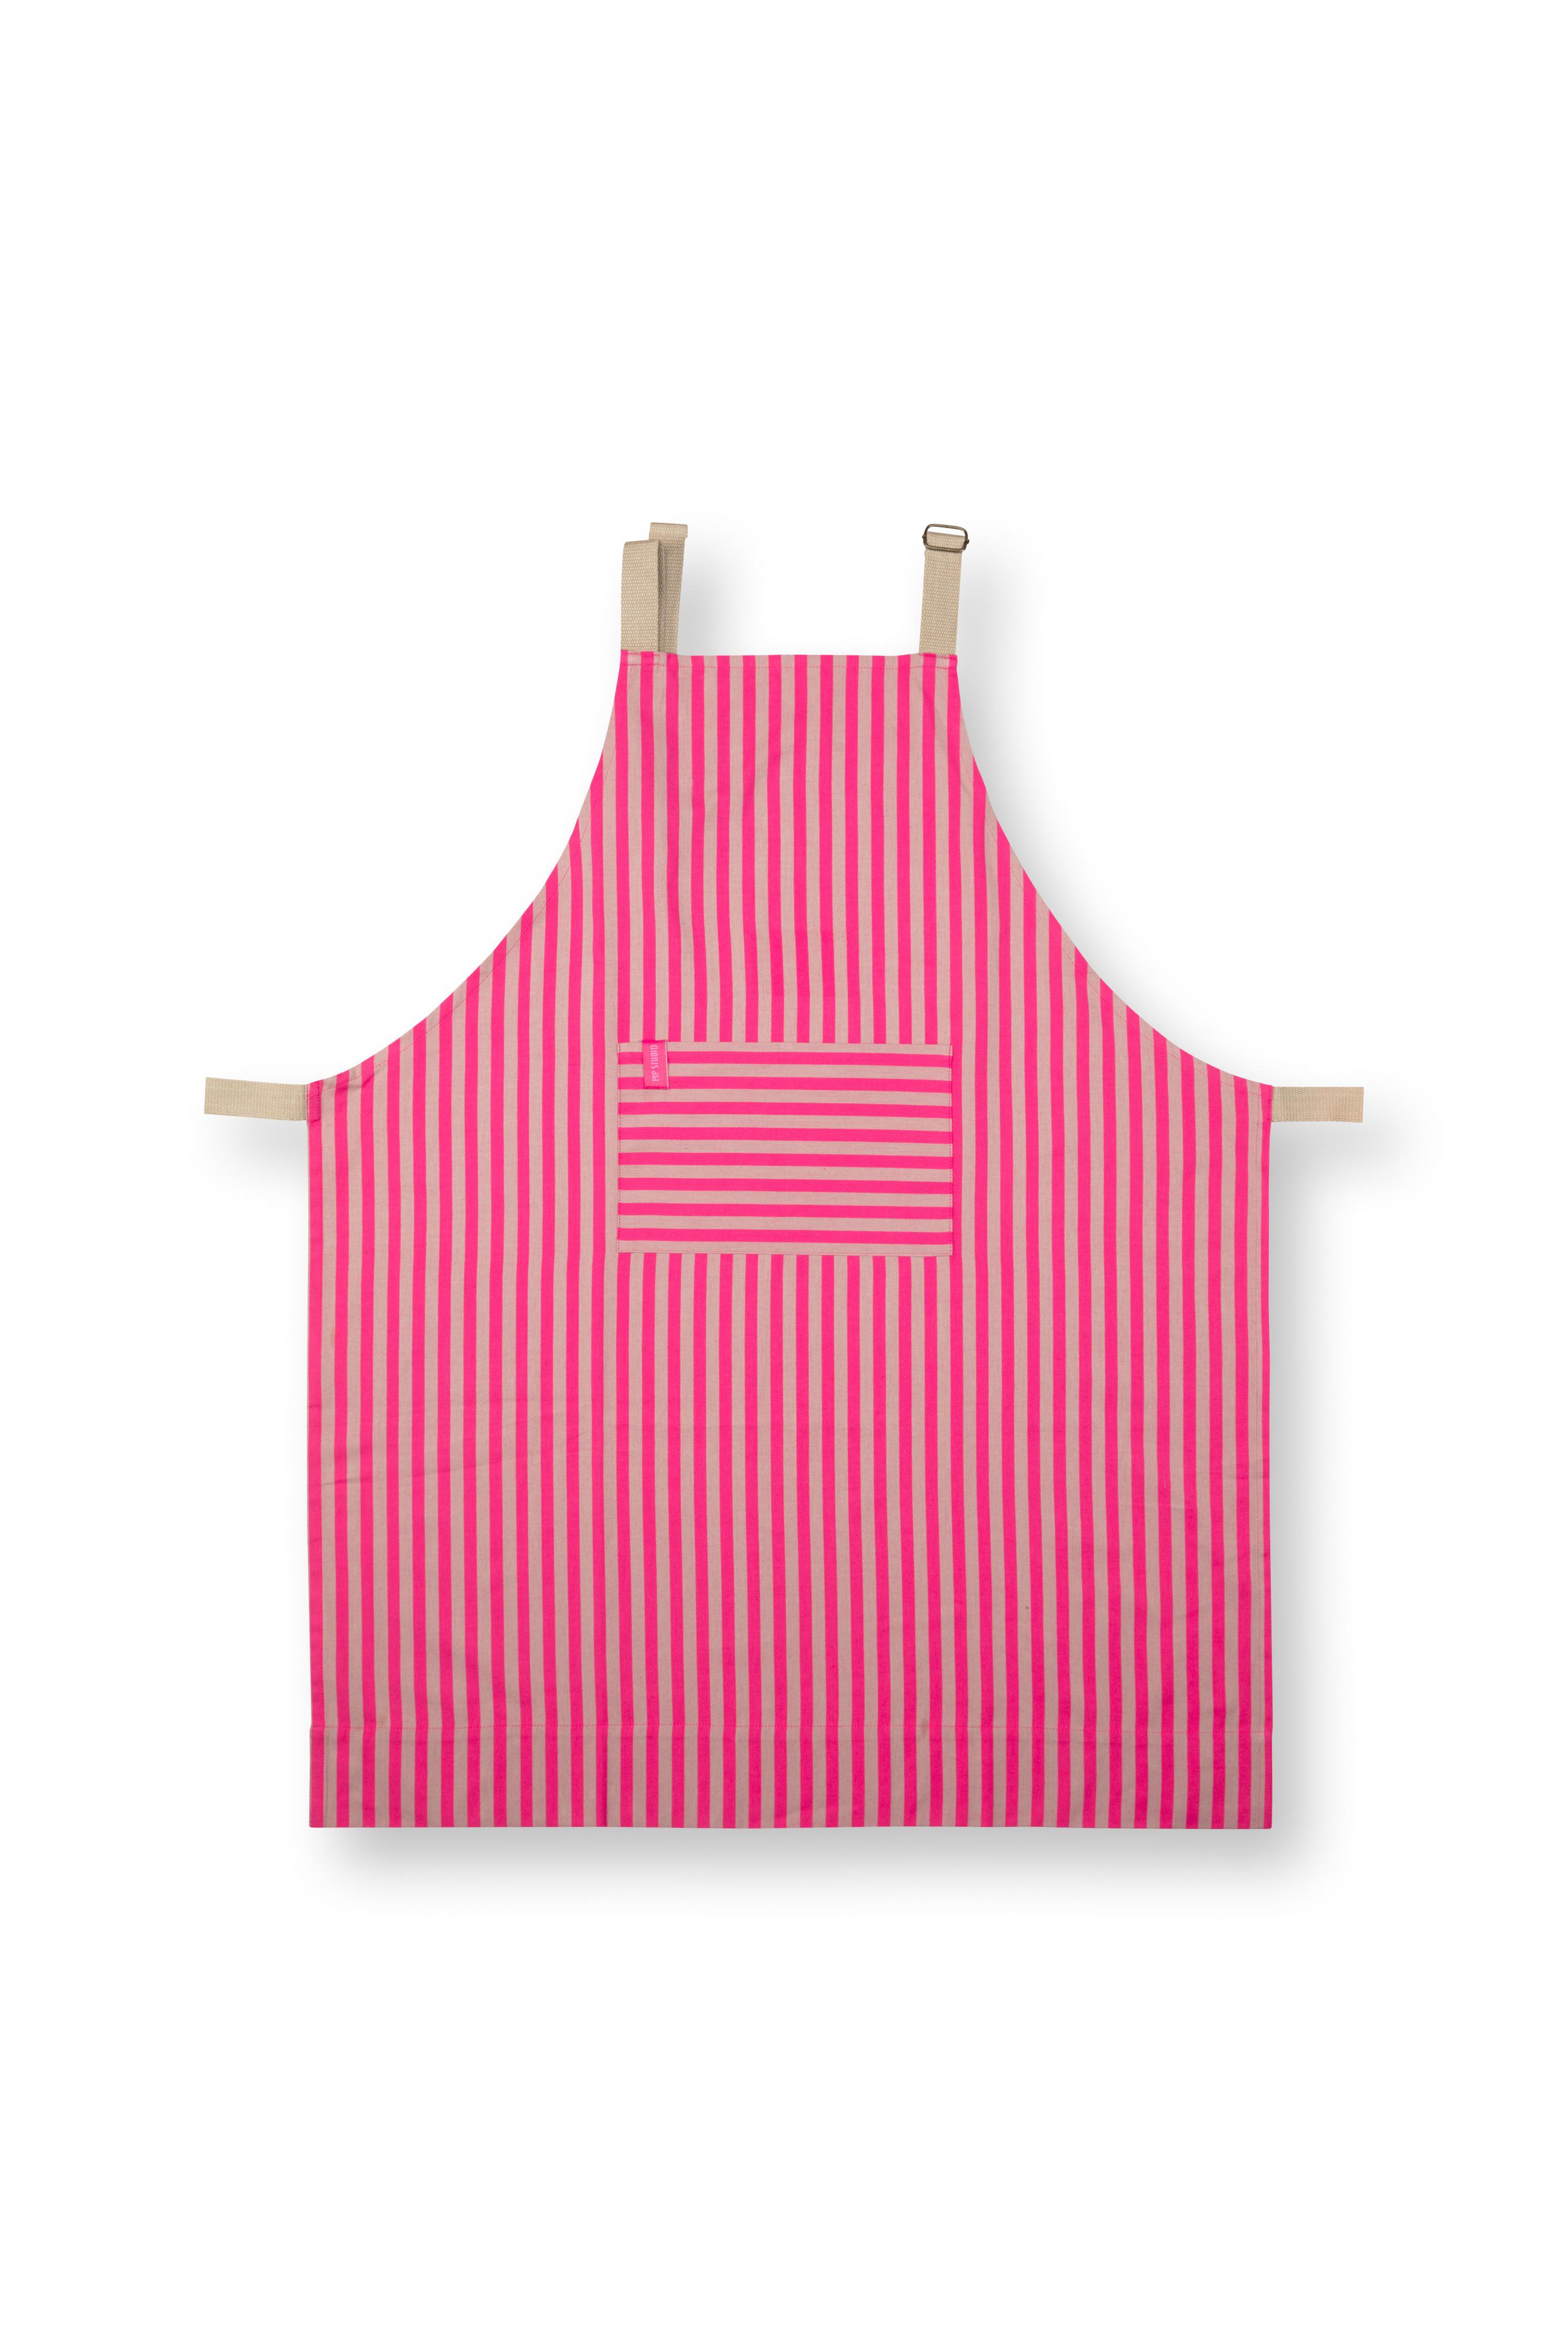 Apron Stripes Pink 72x89.5cm Gift